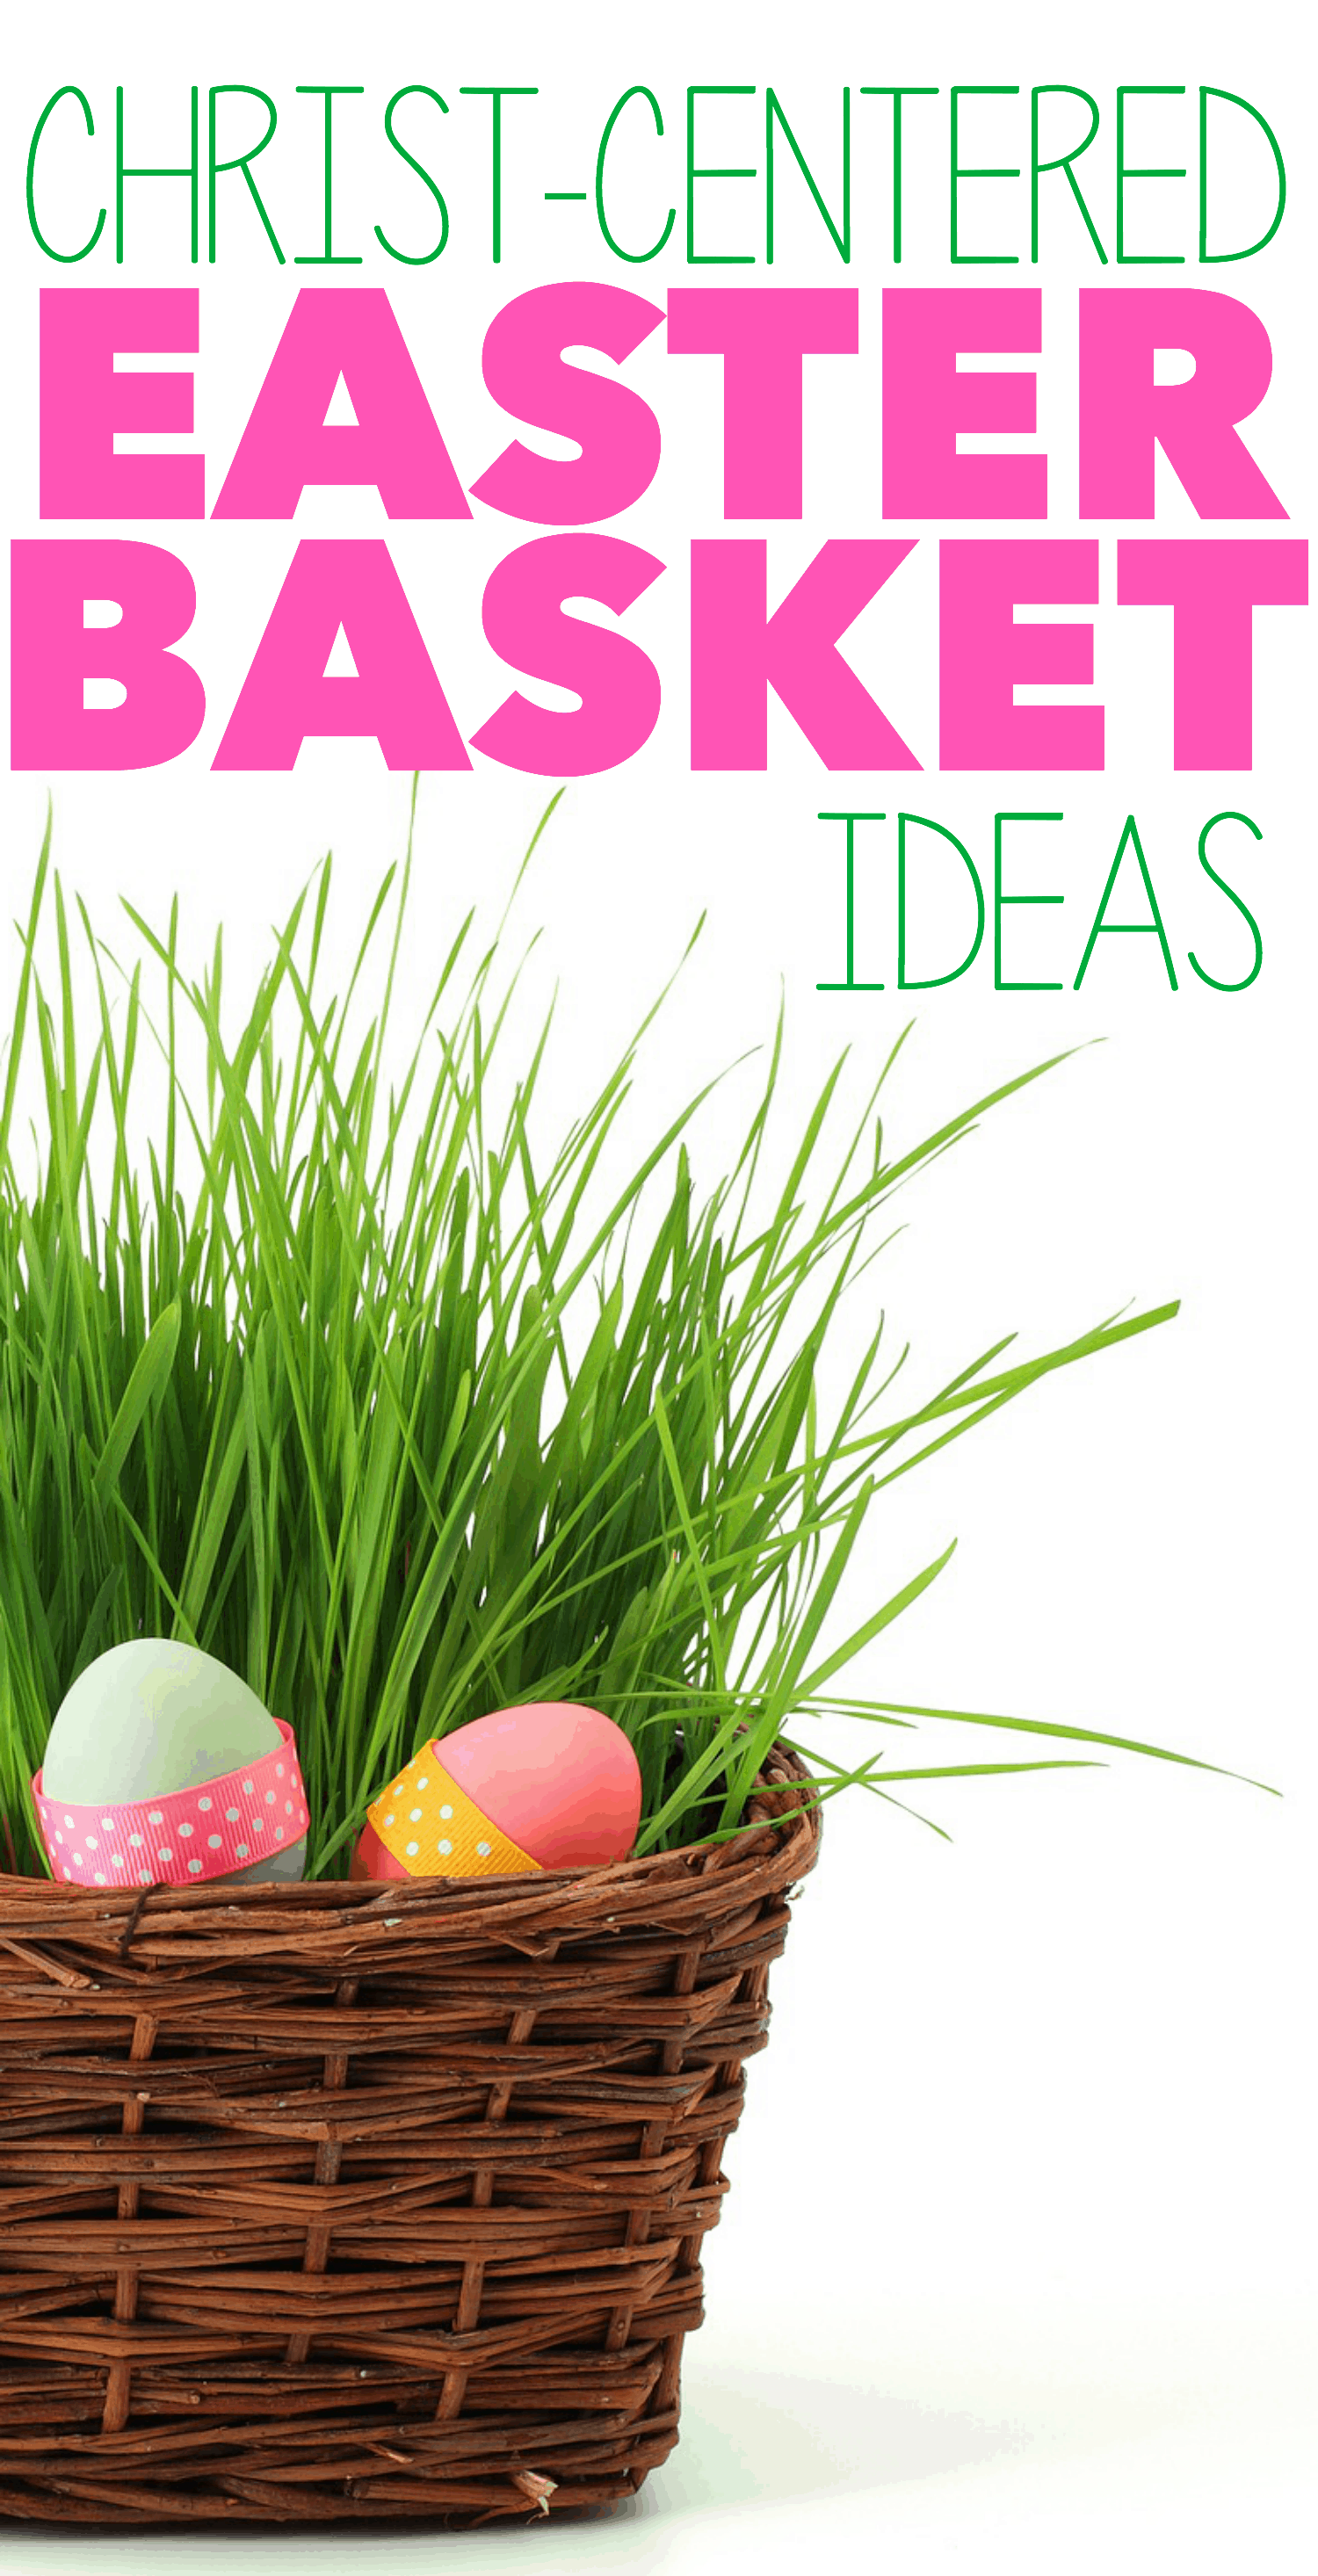 Christ-Centered Easter Basket Ideas